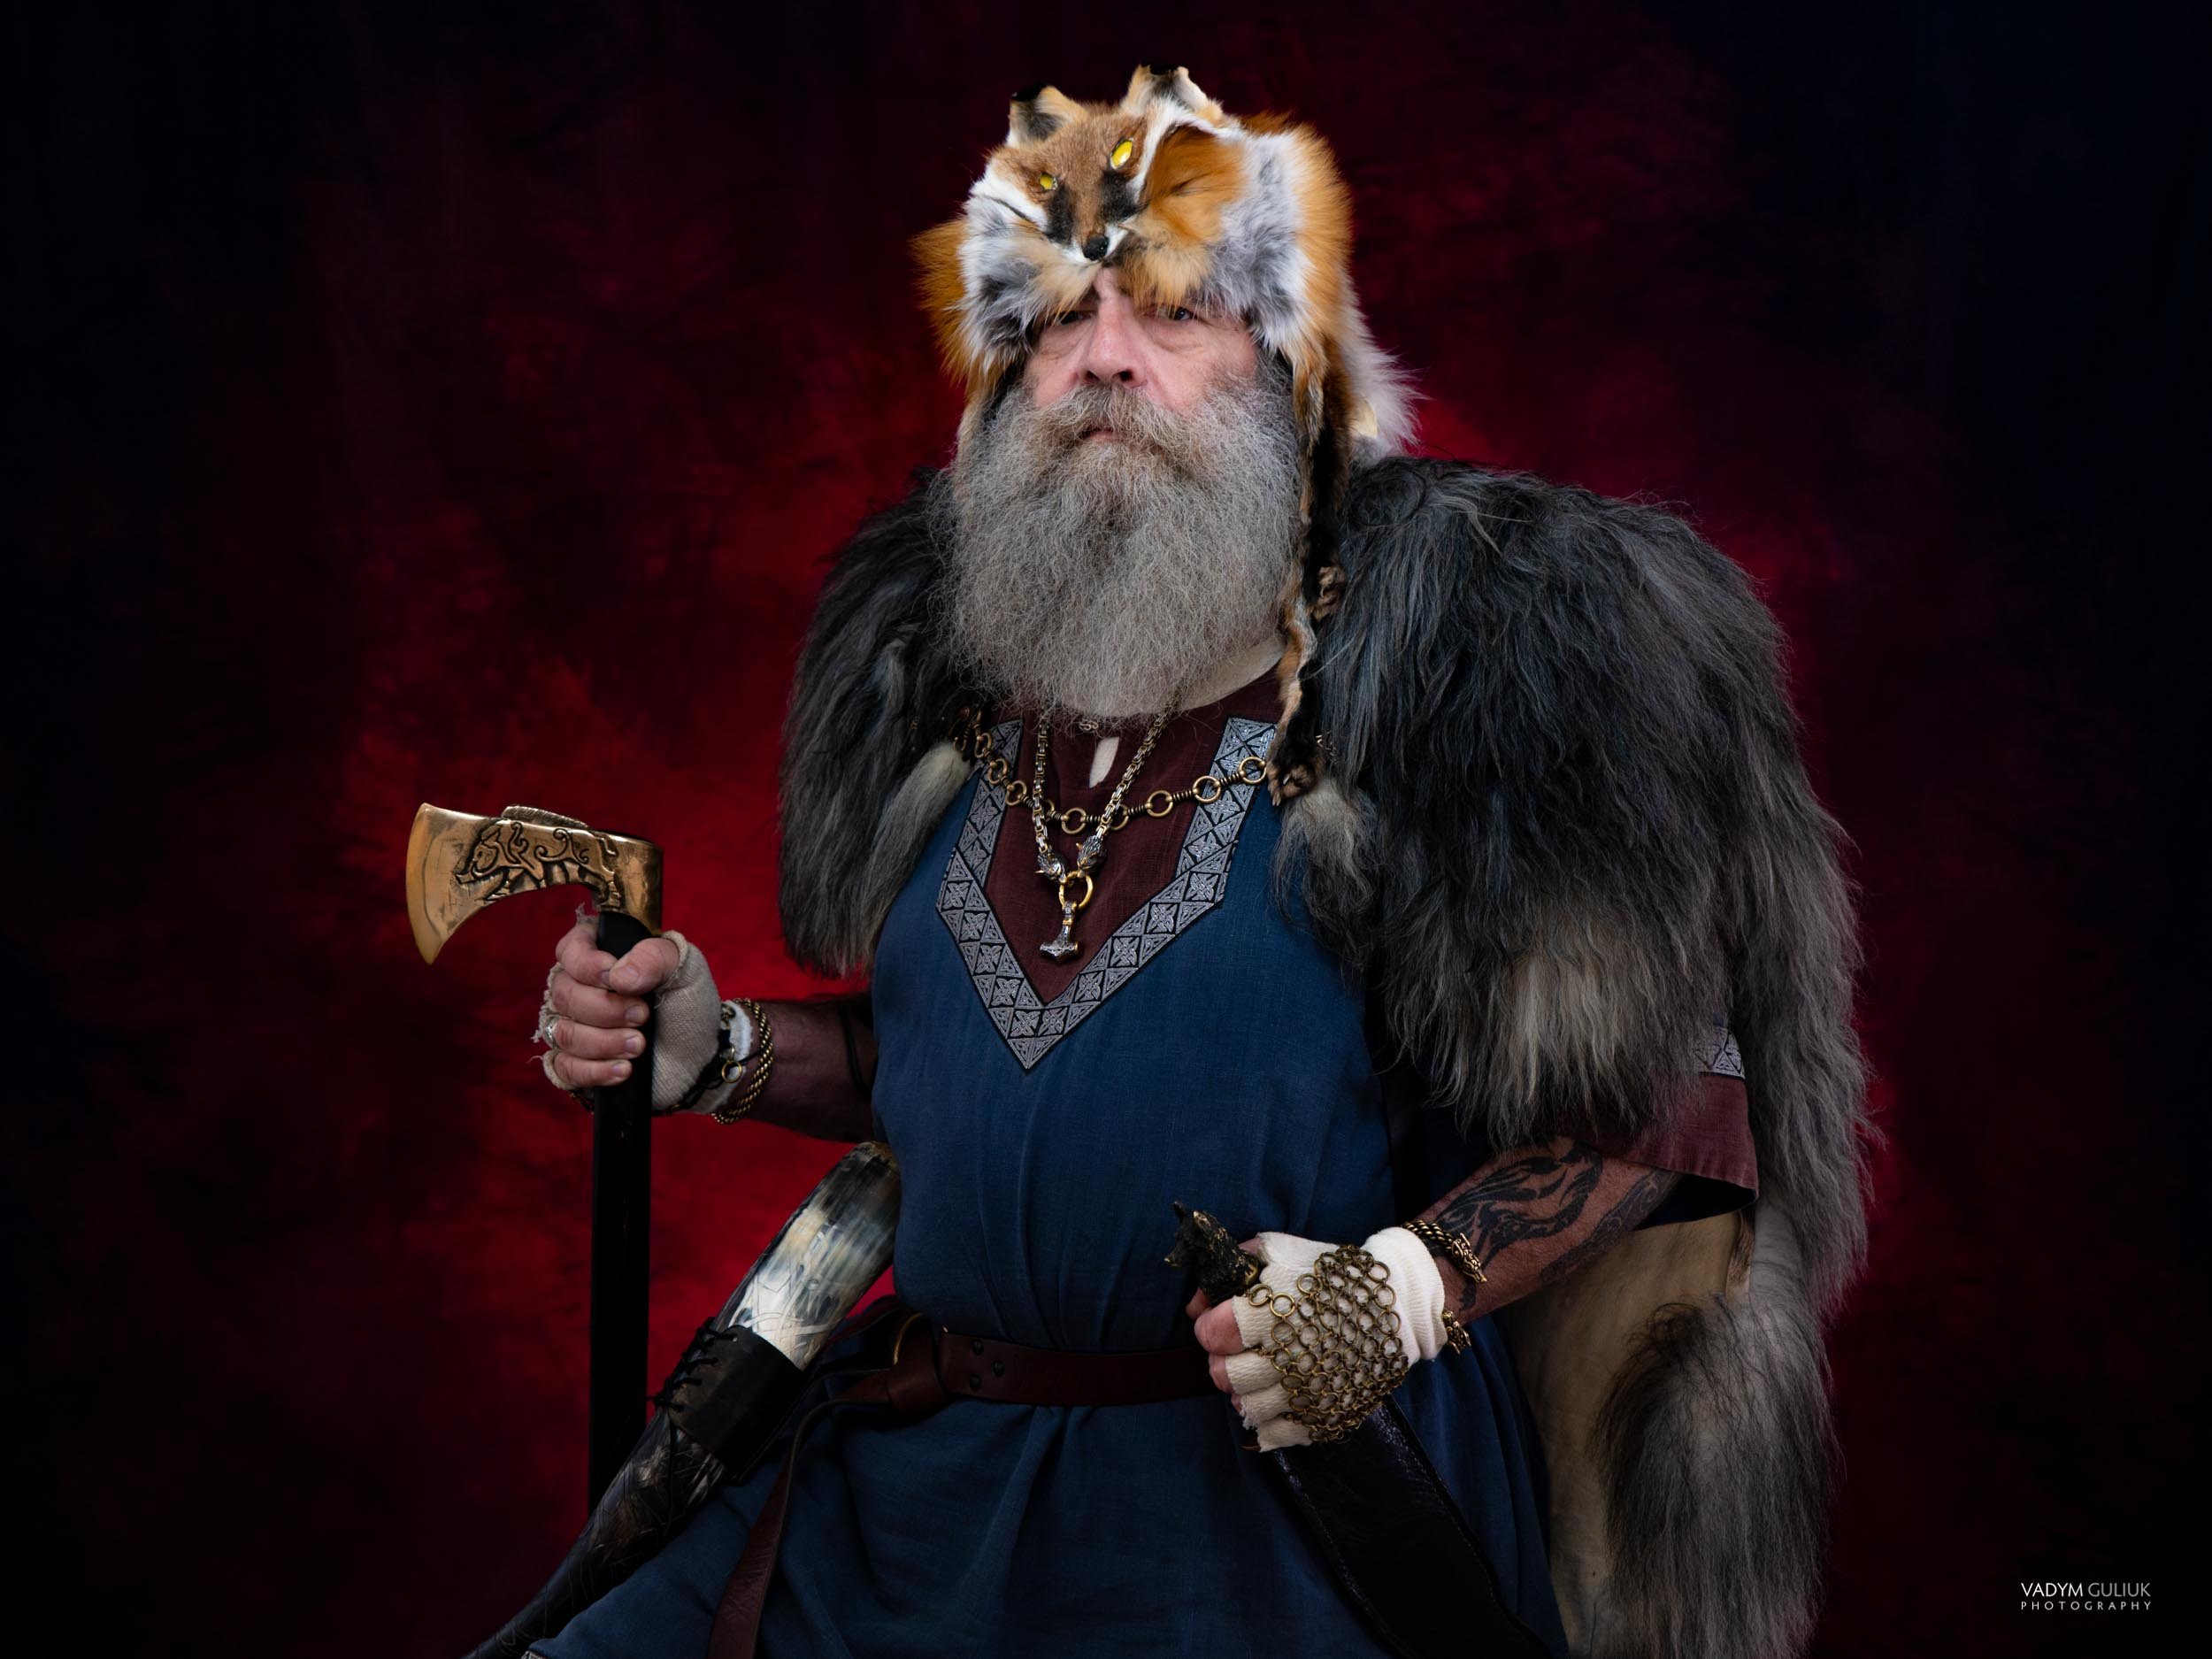 The Vikings Portraits by Vadym 2022-1.jpg